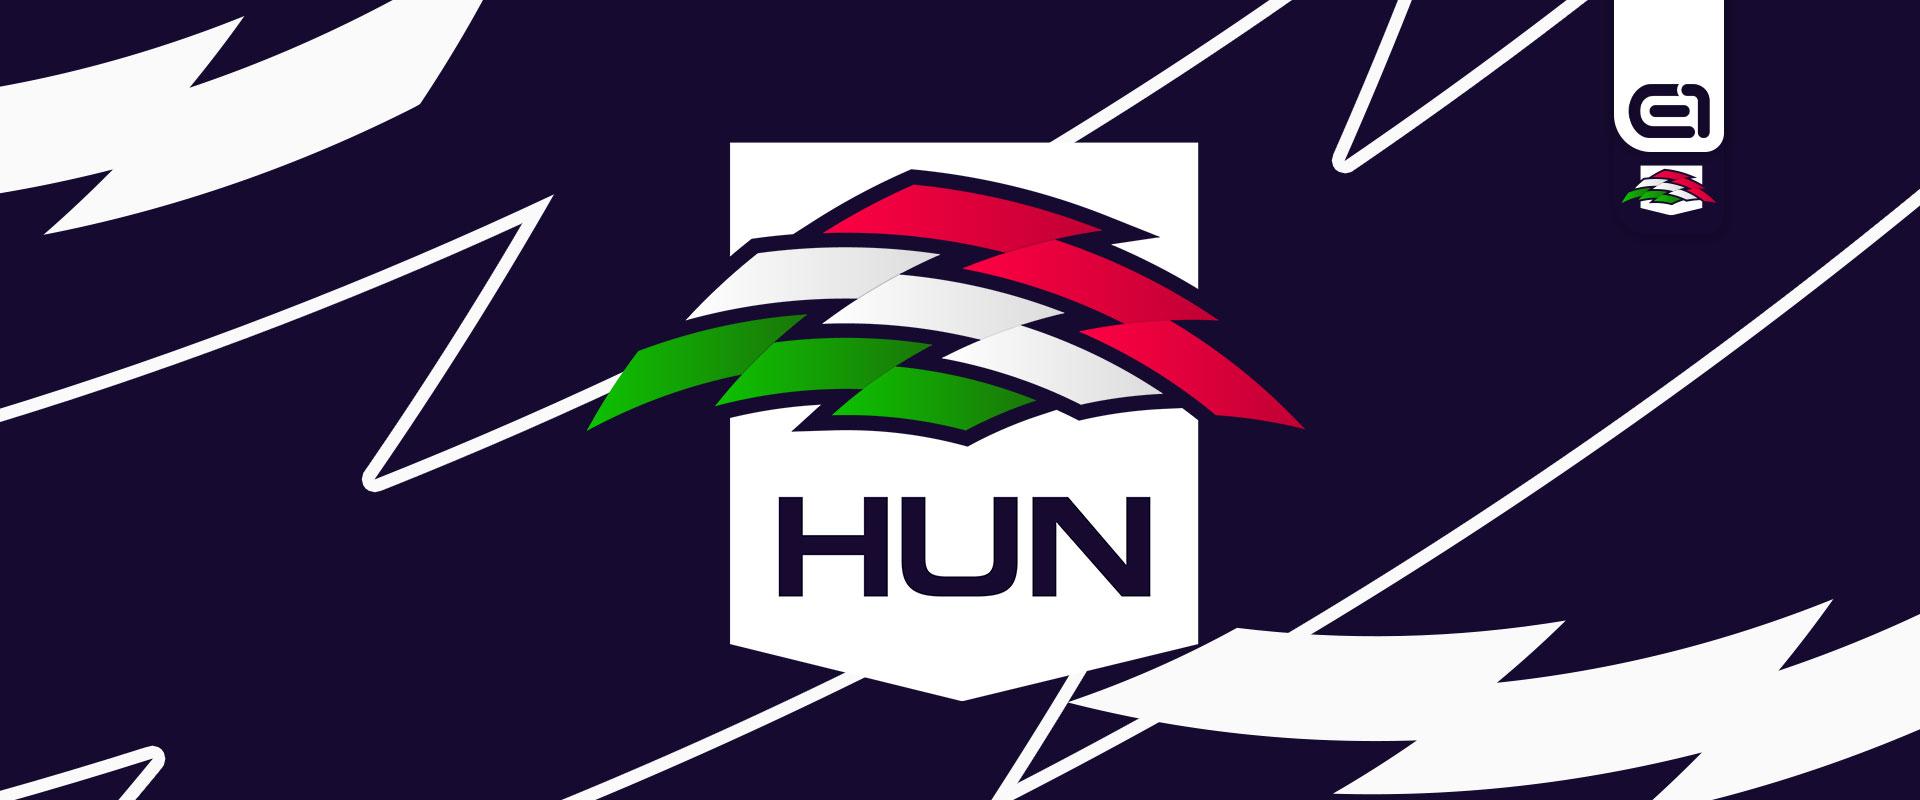 Folytatódik az egyik legizgalmasabb magyar e-sport projekt, visszatér a Magyar E-sport Válogatott